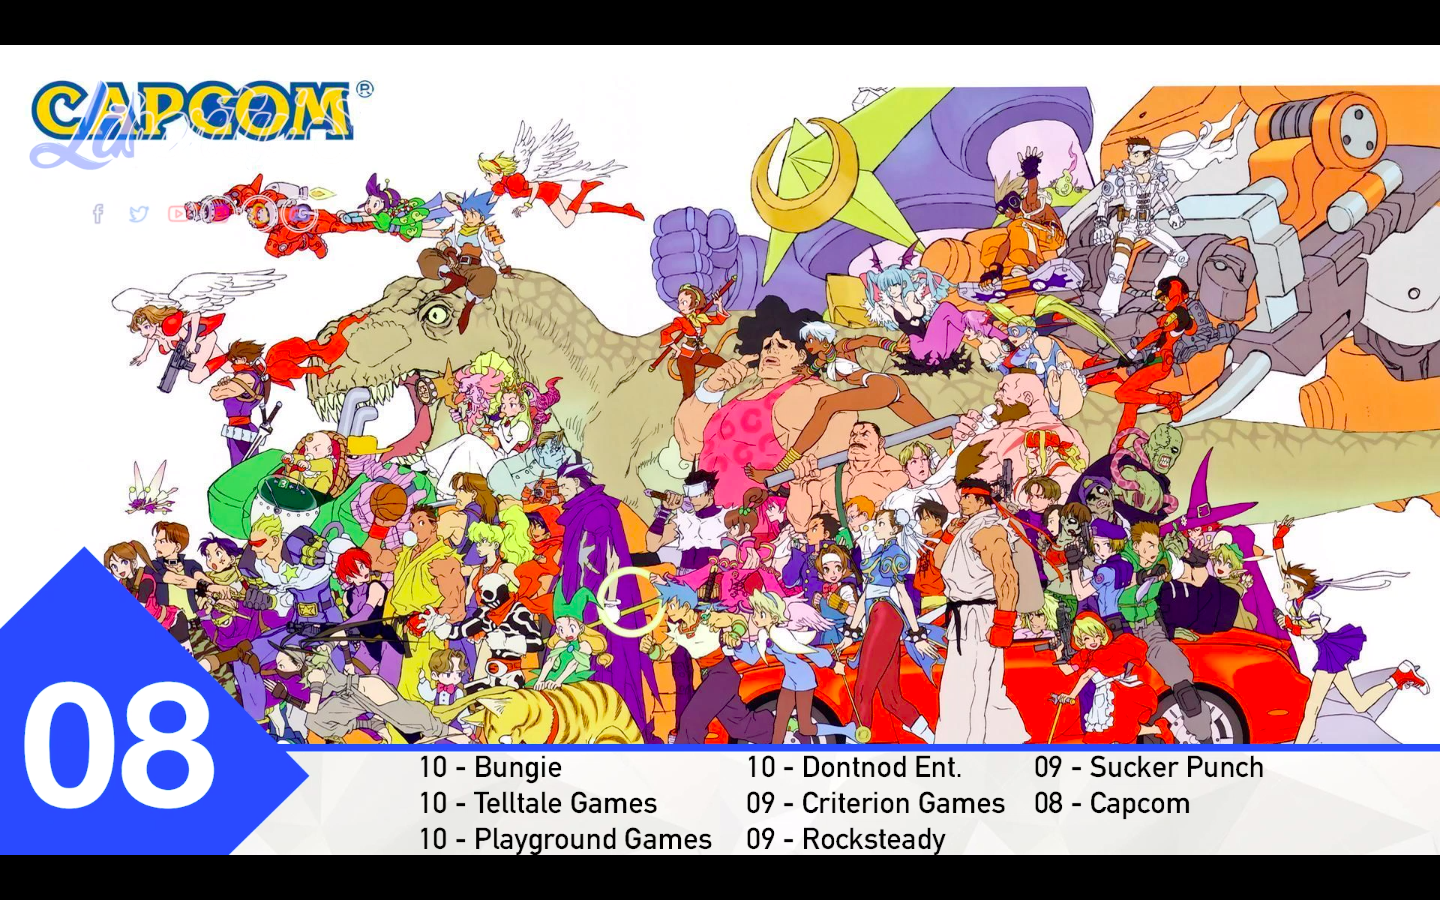 Top 08 - Capcom